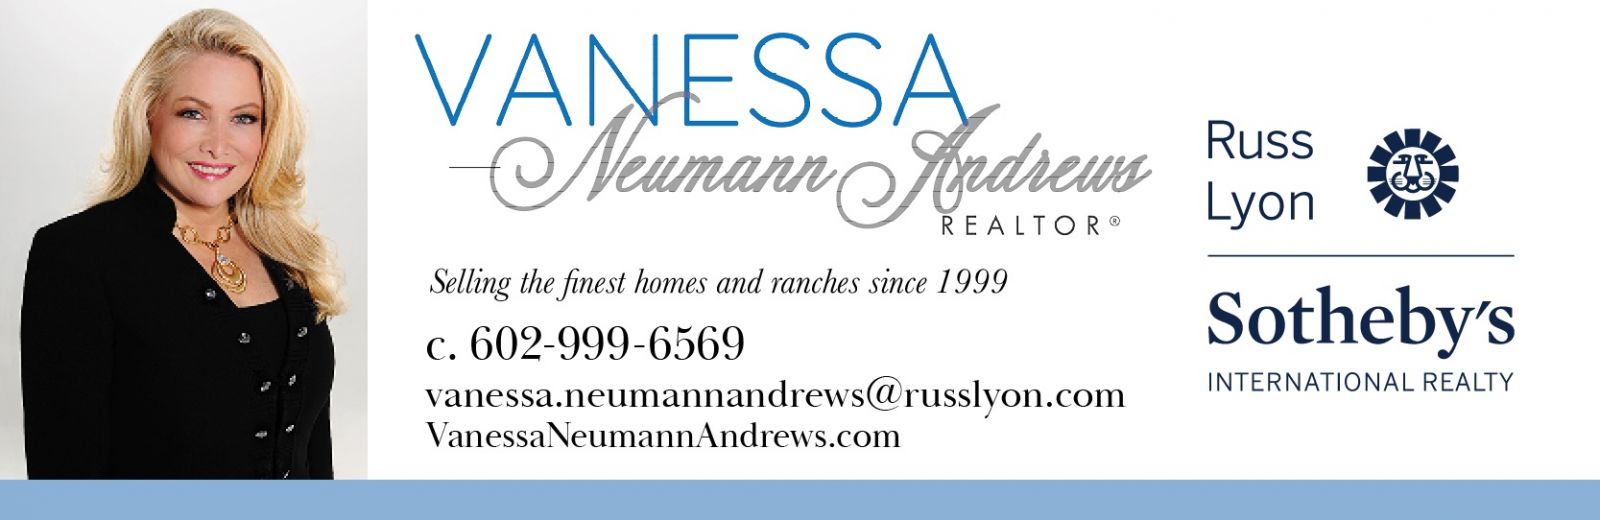 Visit Vanessa Neumann Andrews Horse Property Ranch Realtor